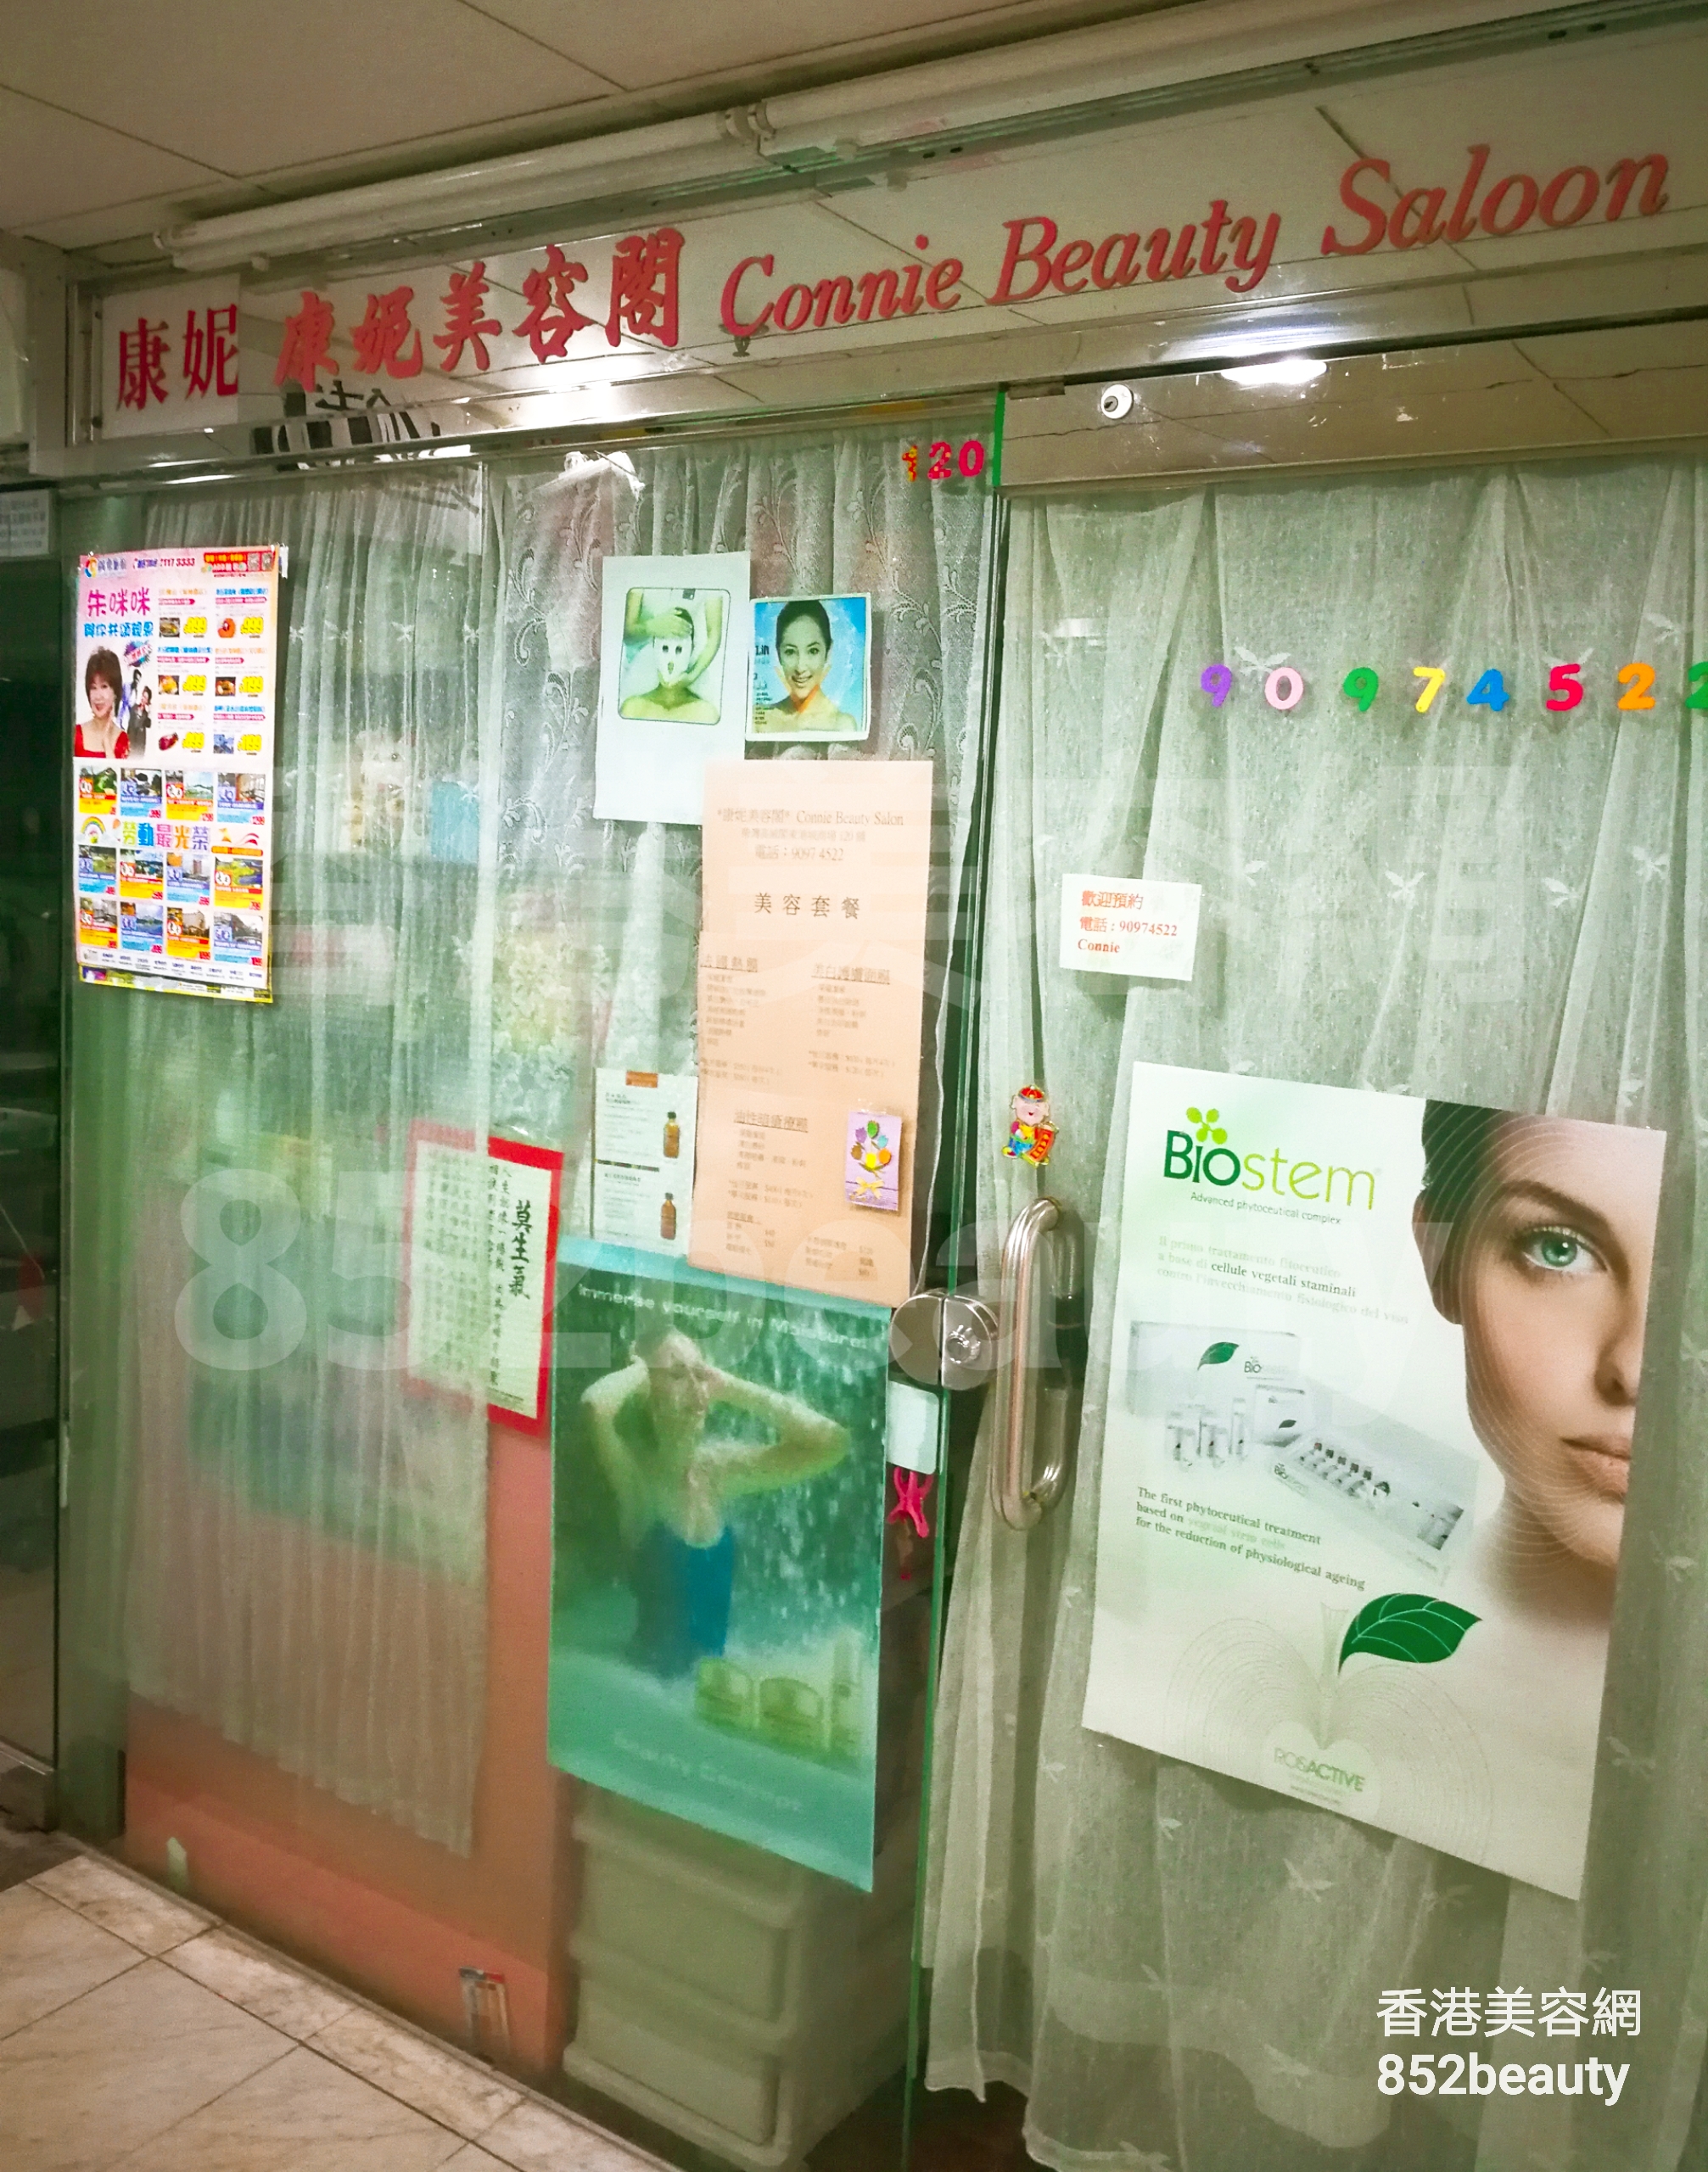 香港美容網 Hong Kong Beauty Salon 美容院 / 美容師: 康妮美容閣 Connie Beauty Saloon